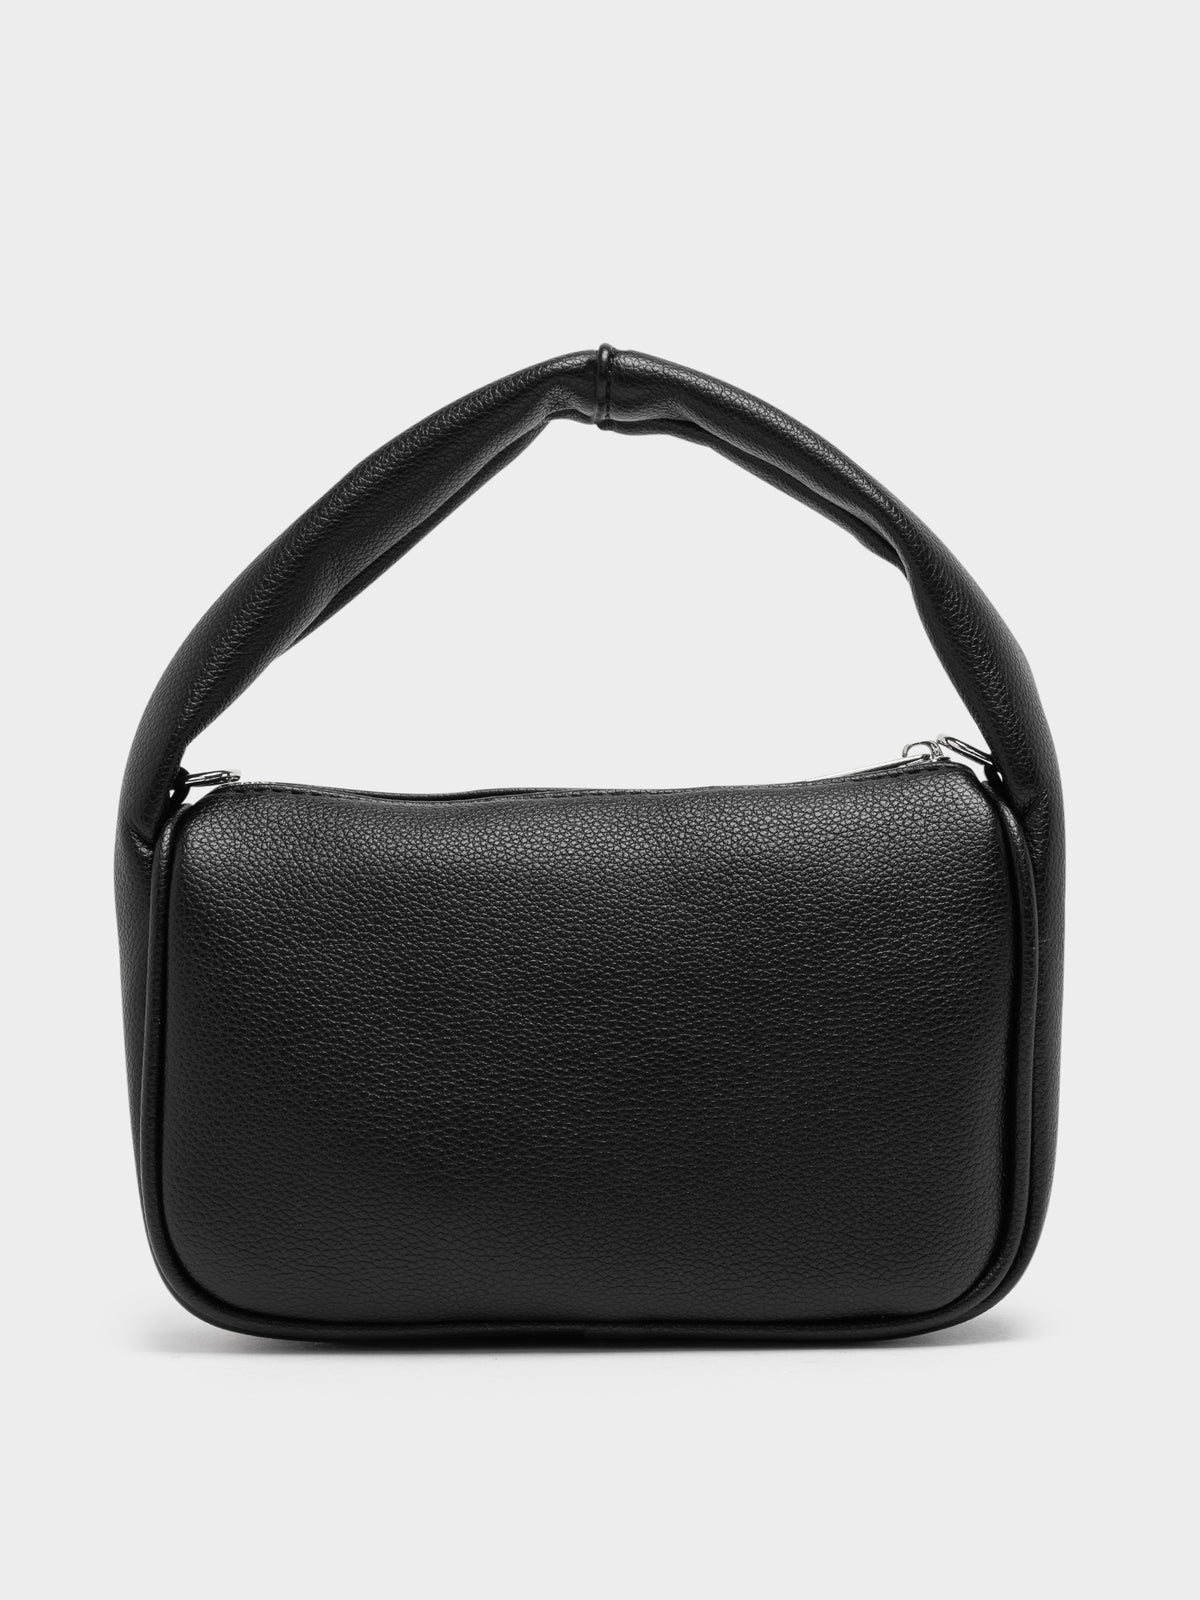 Bristol Bag in Black